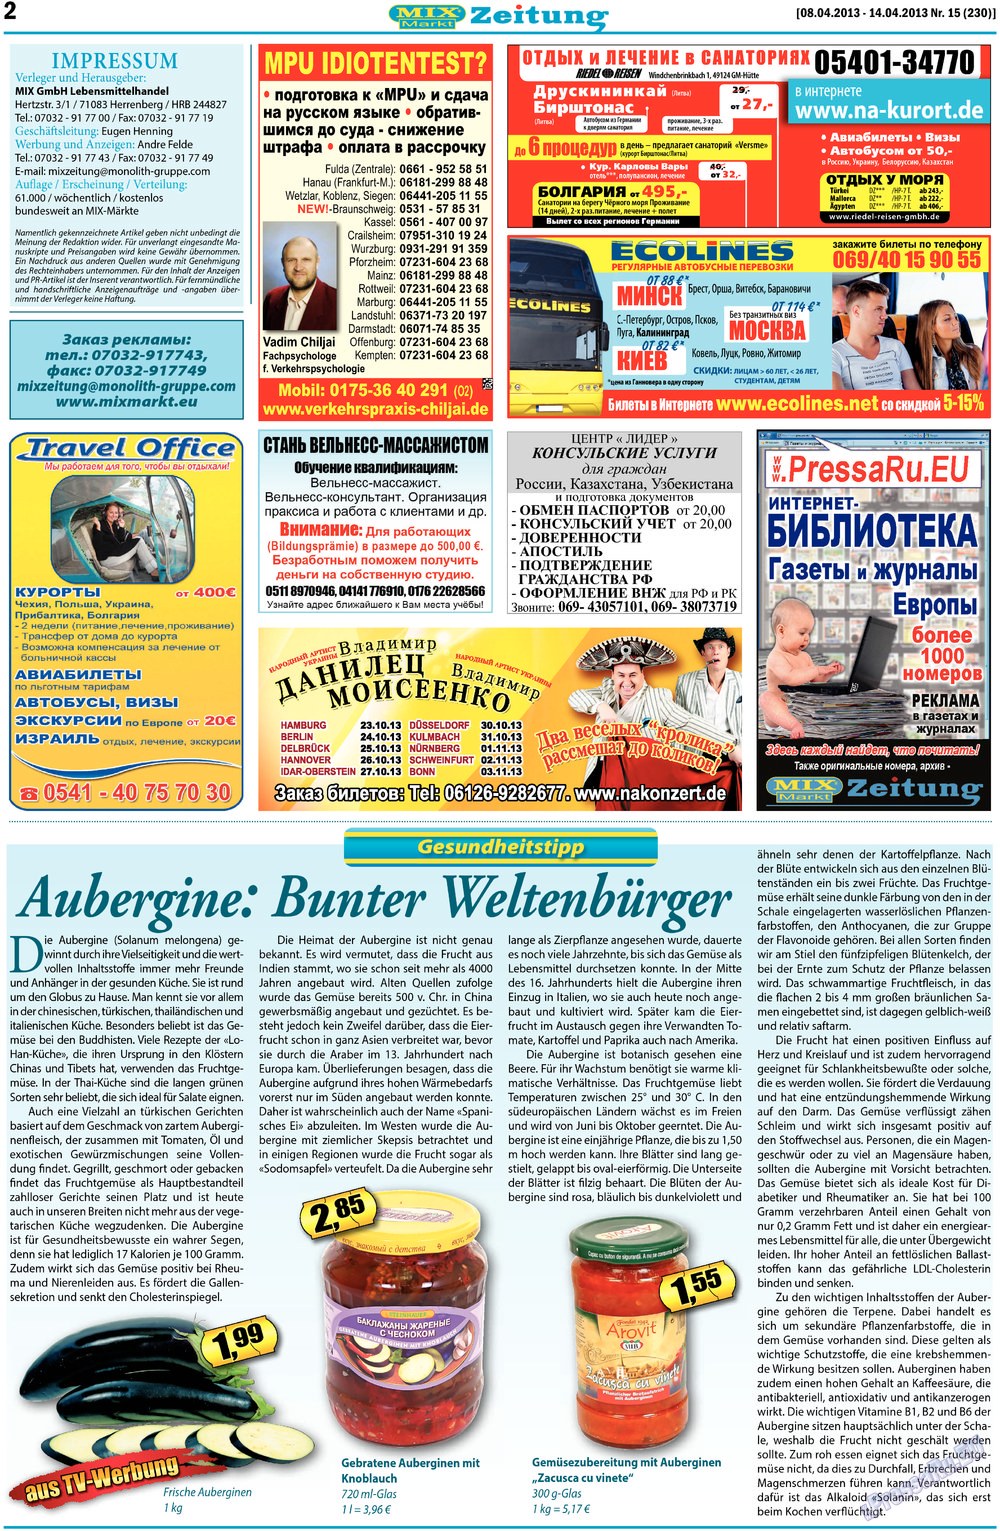 MIX-Markt Zeitung, газета. 2013 №15 стр.2